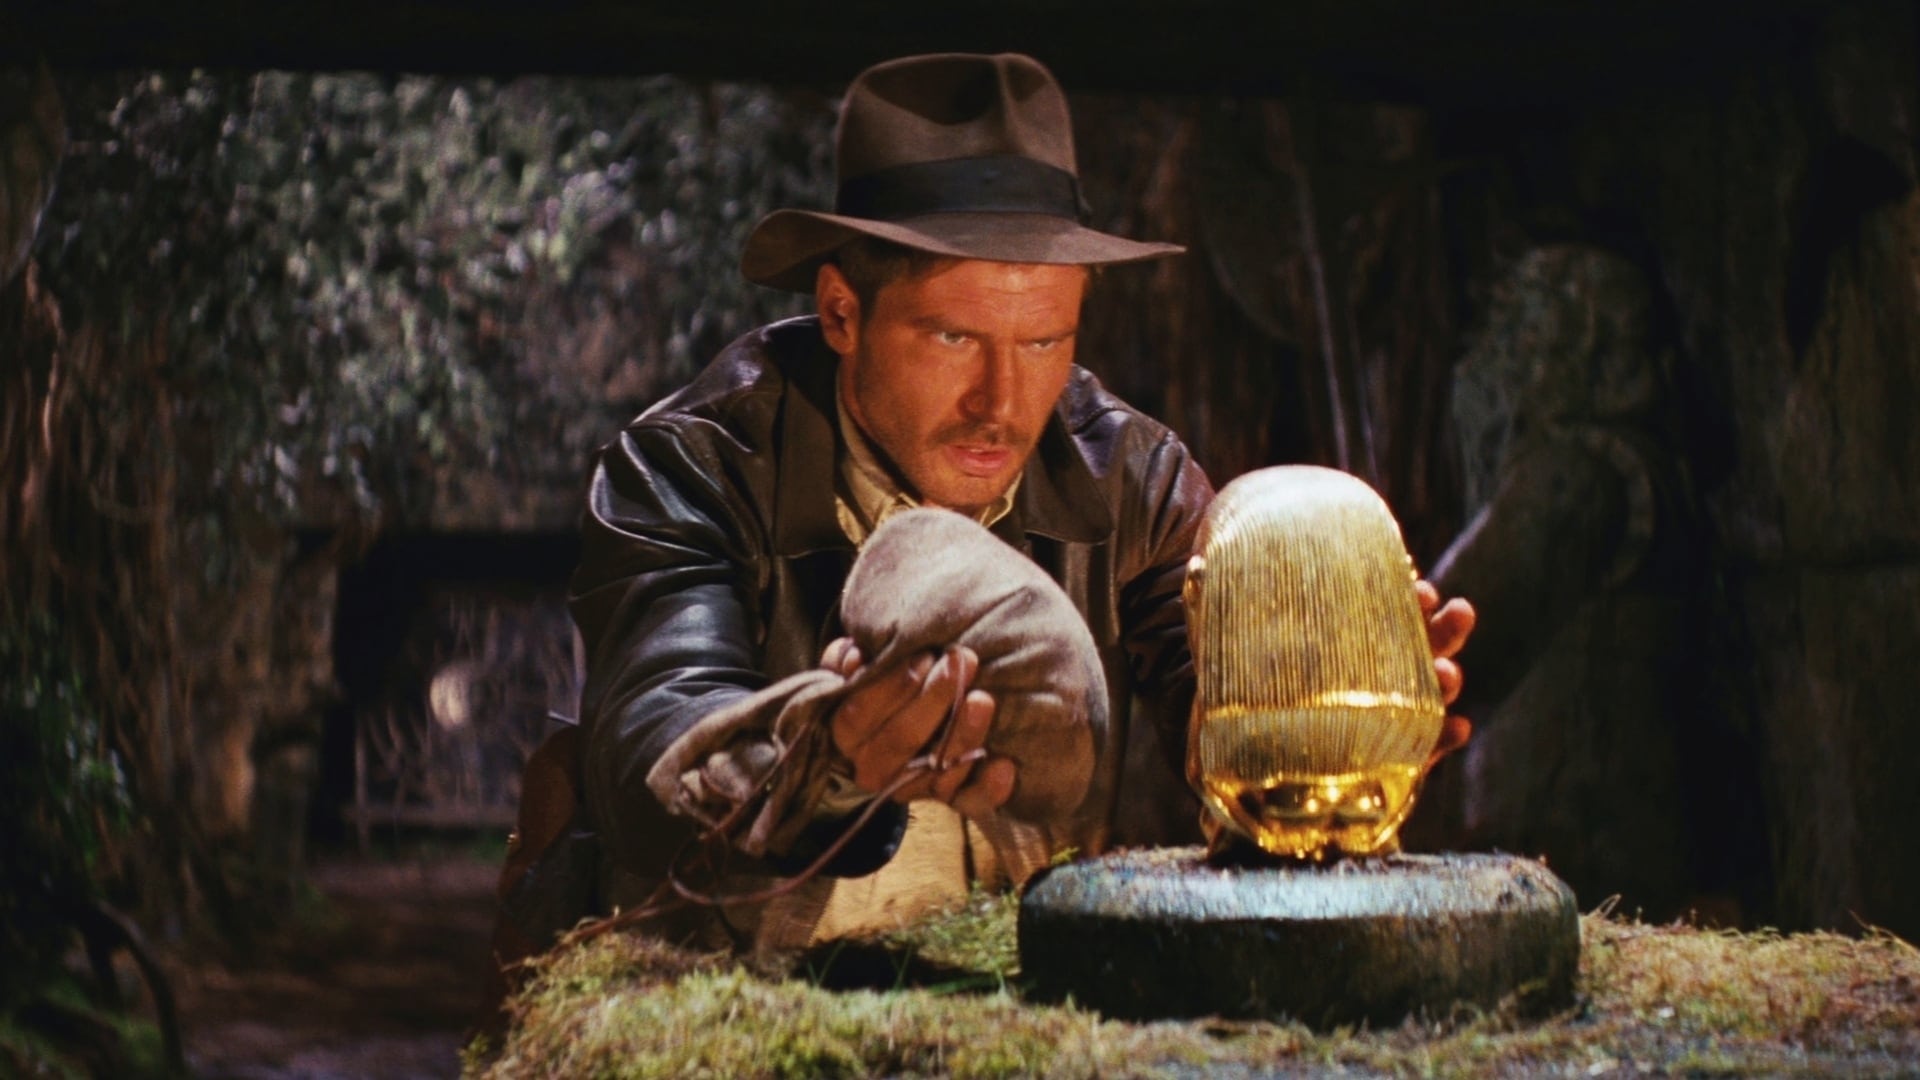 Indiana Jones og jagten på den forsvundne skat